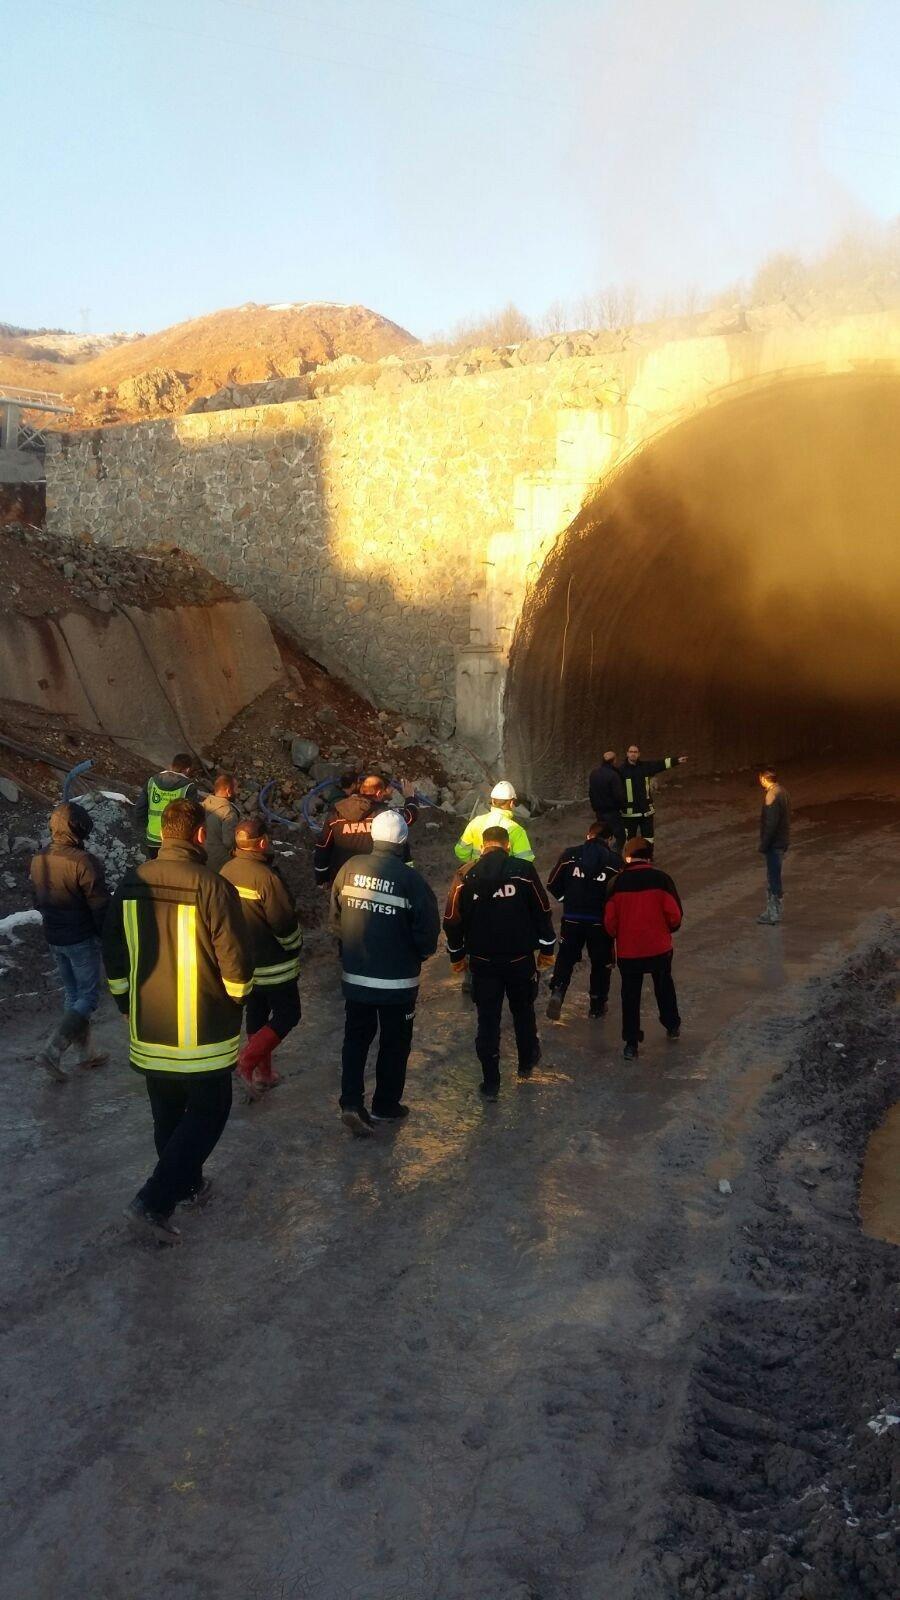 Sivasta tünel inşaatında yangın